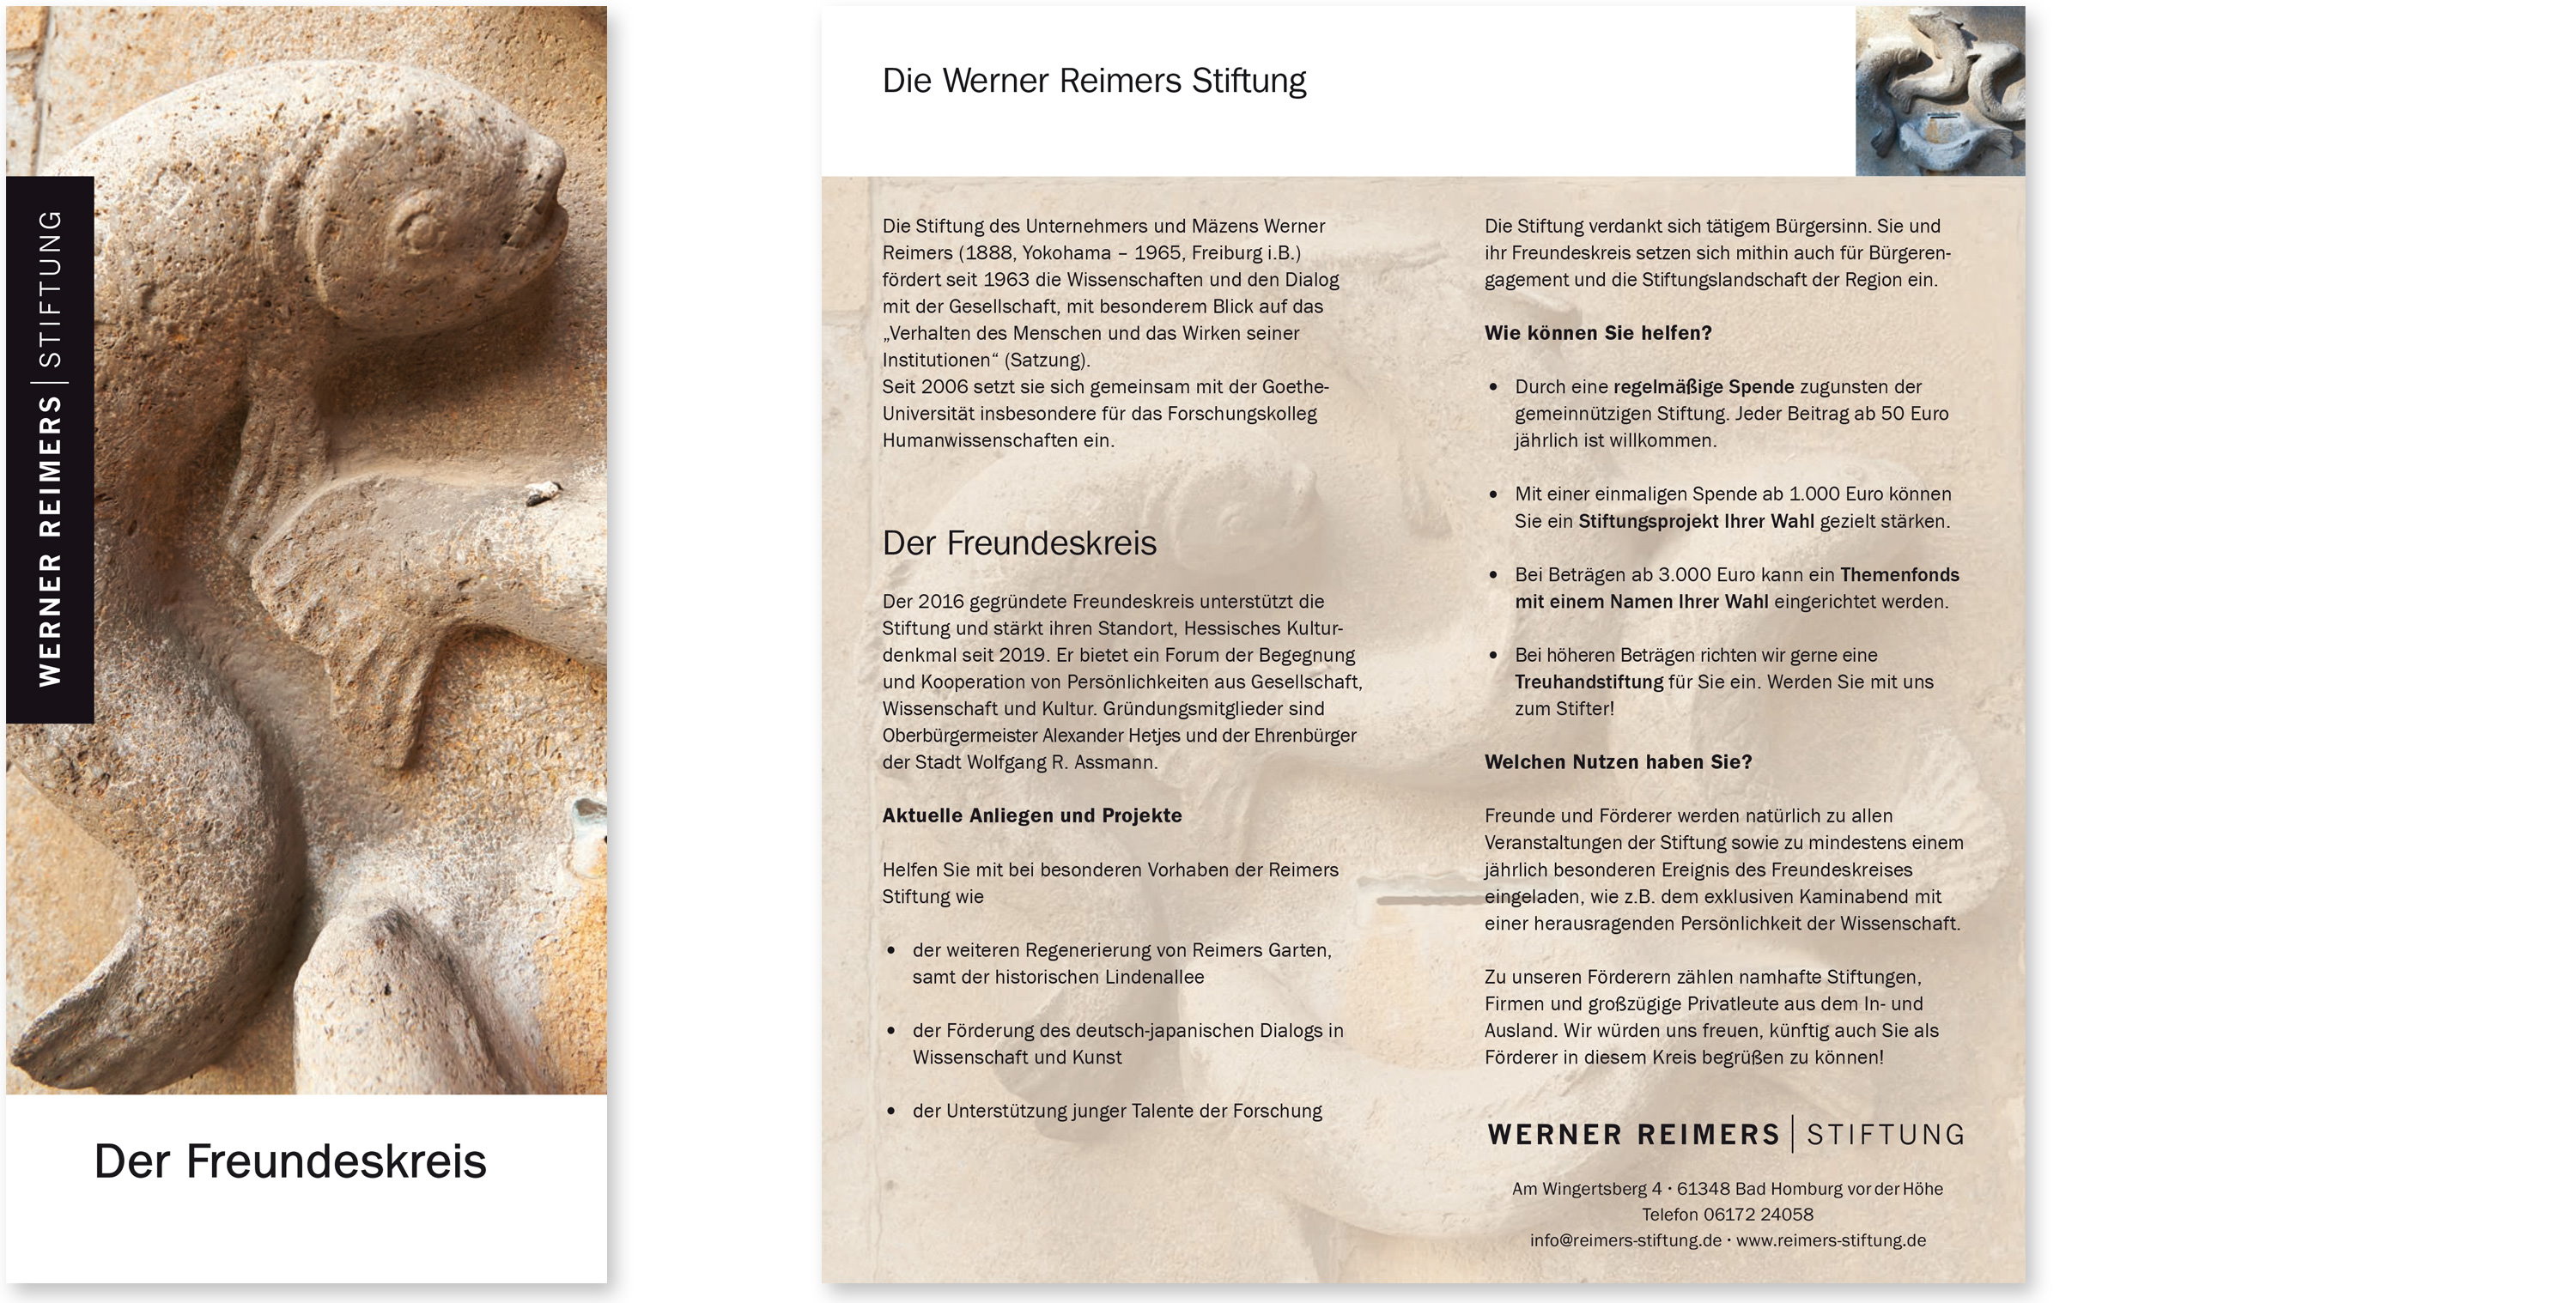 reeberdesign | Werner Reimers Stiftung - Flyer